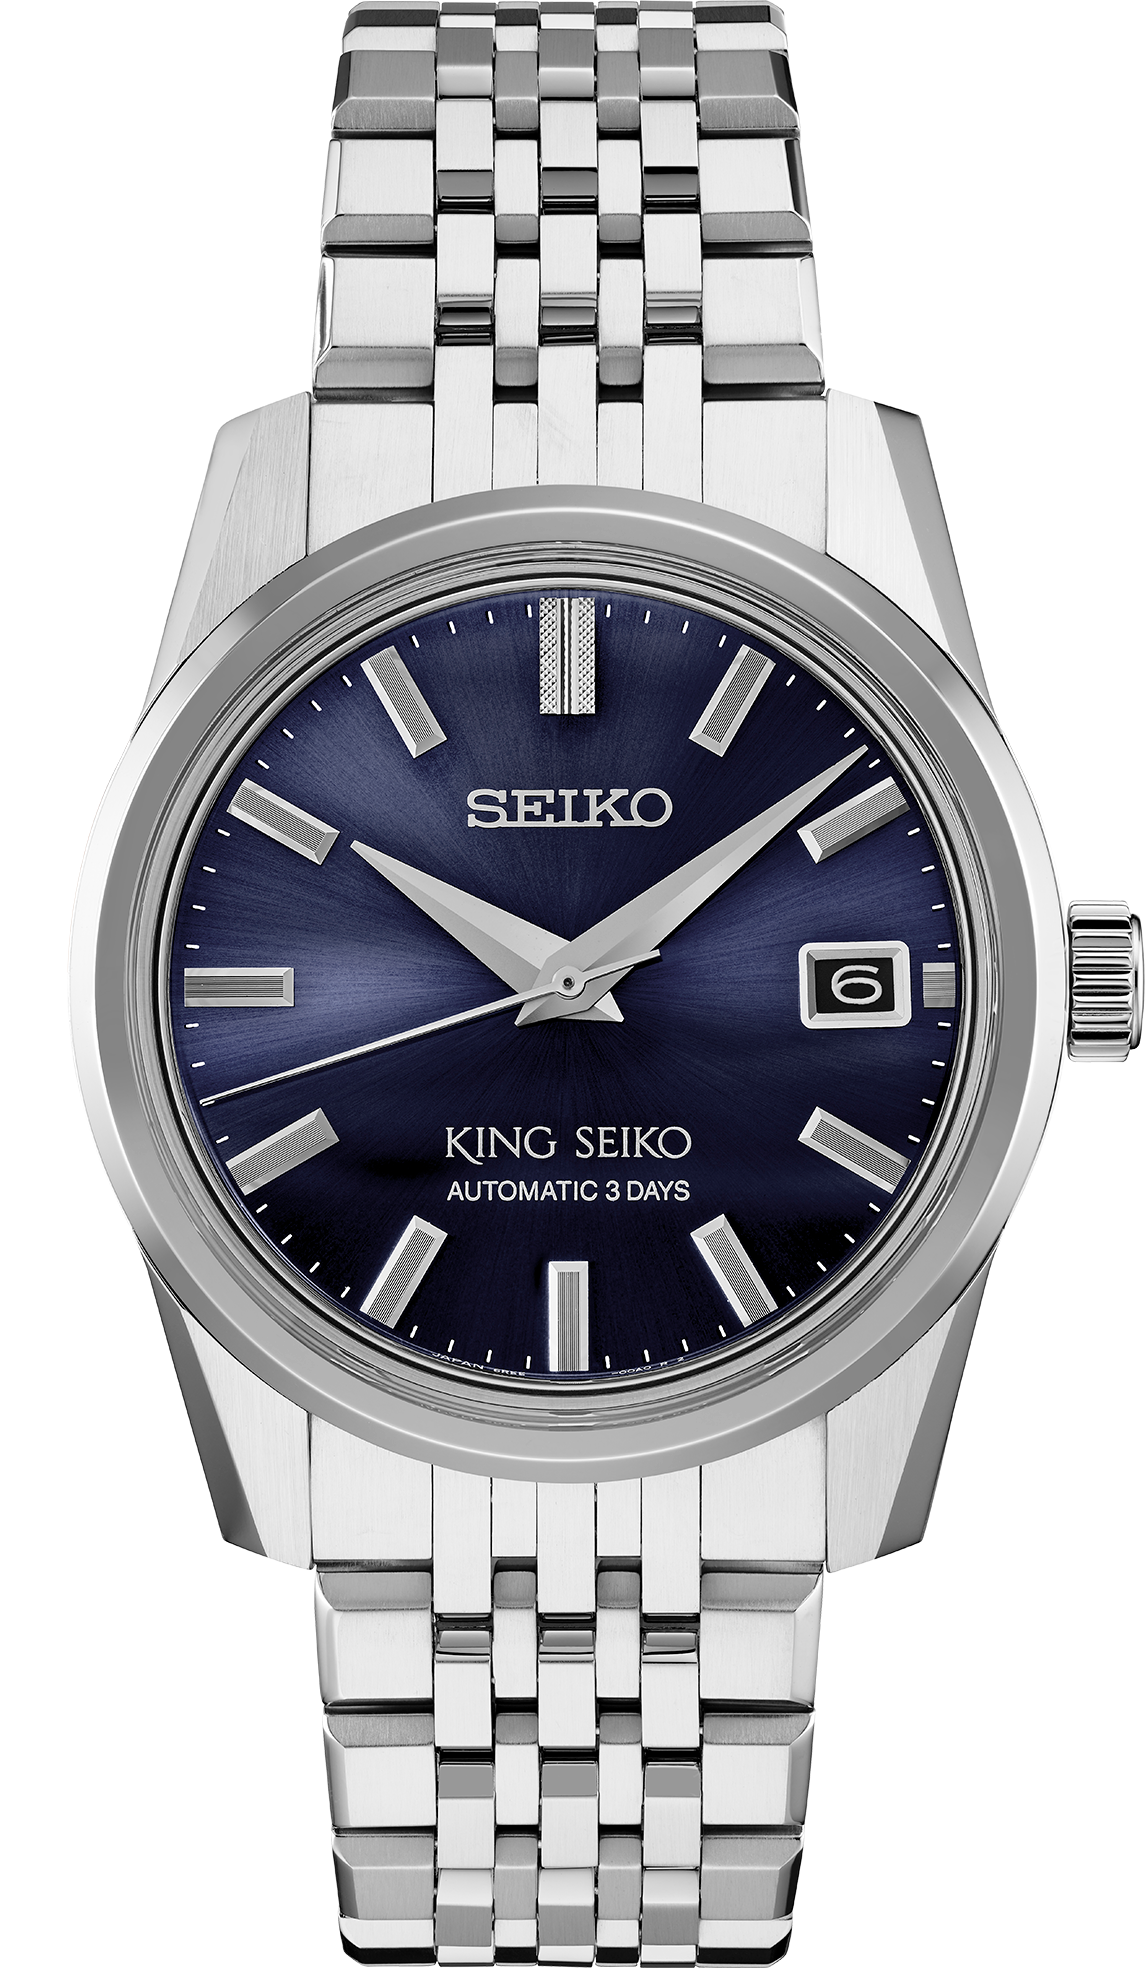 SPB371 King Seiko